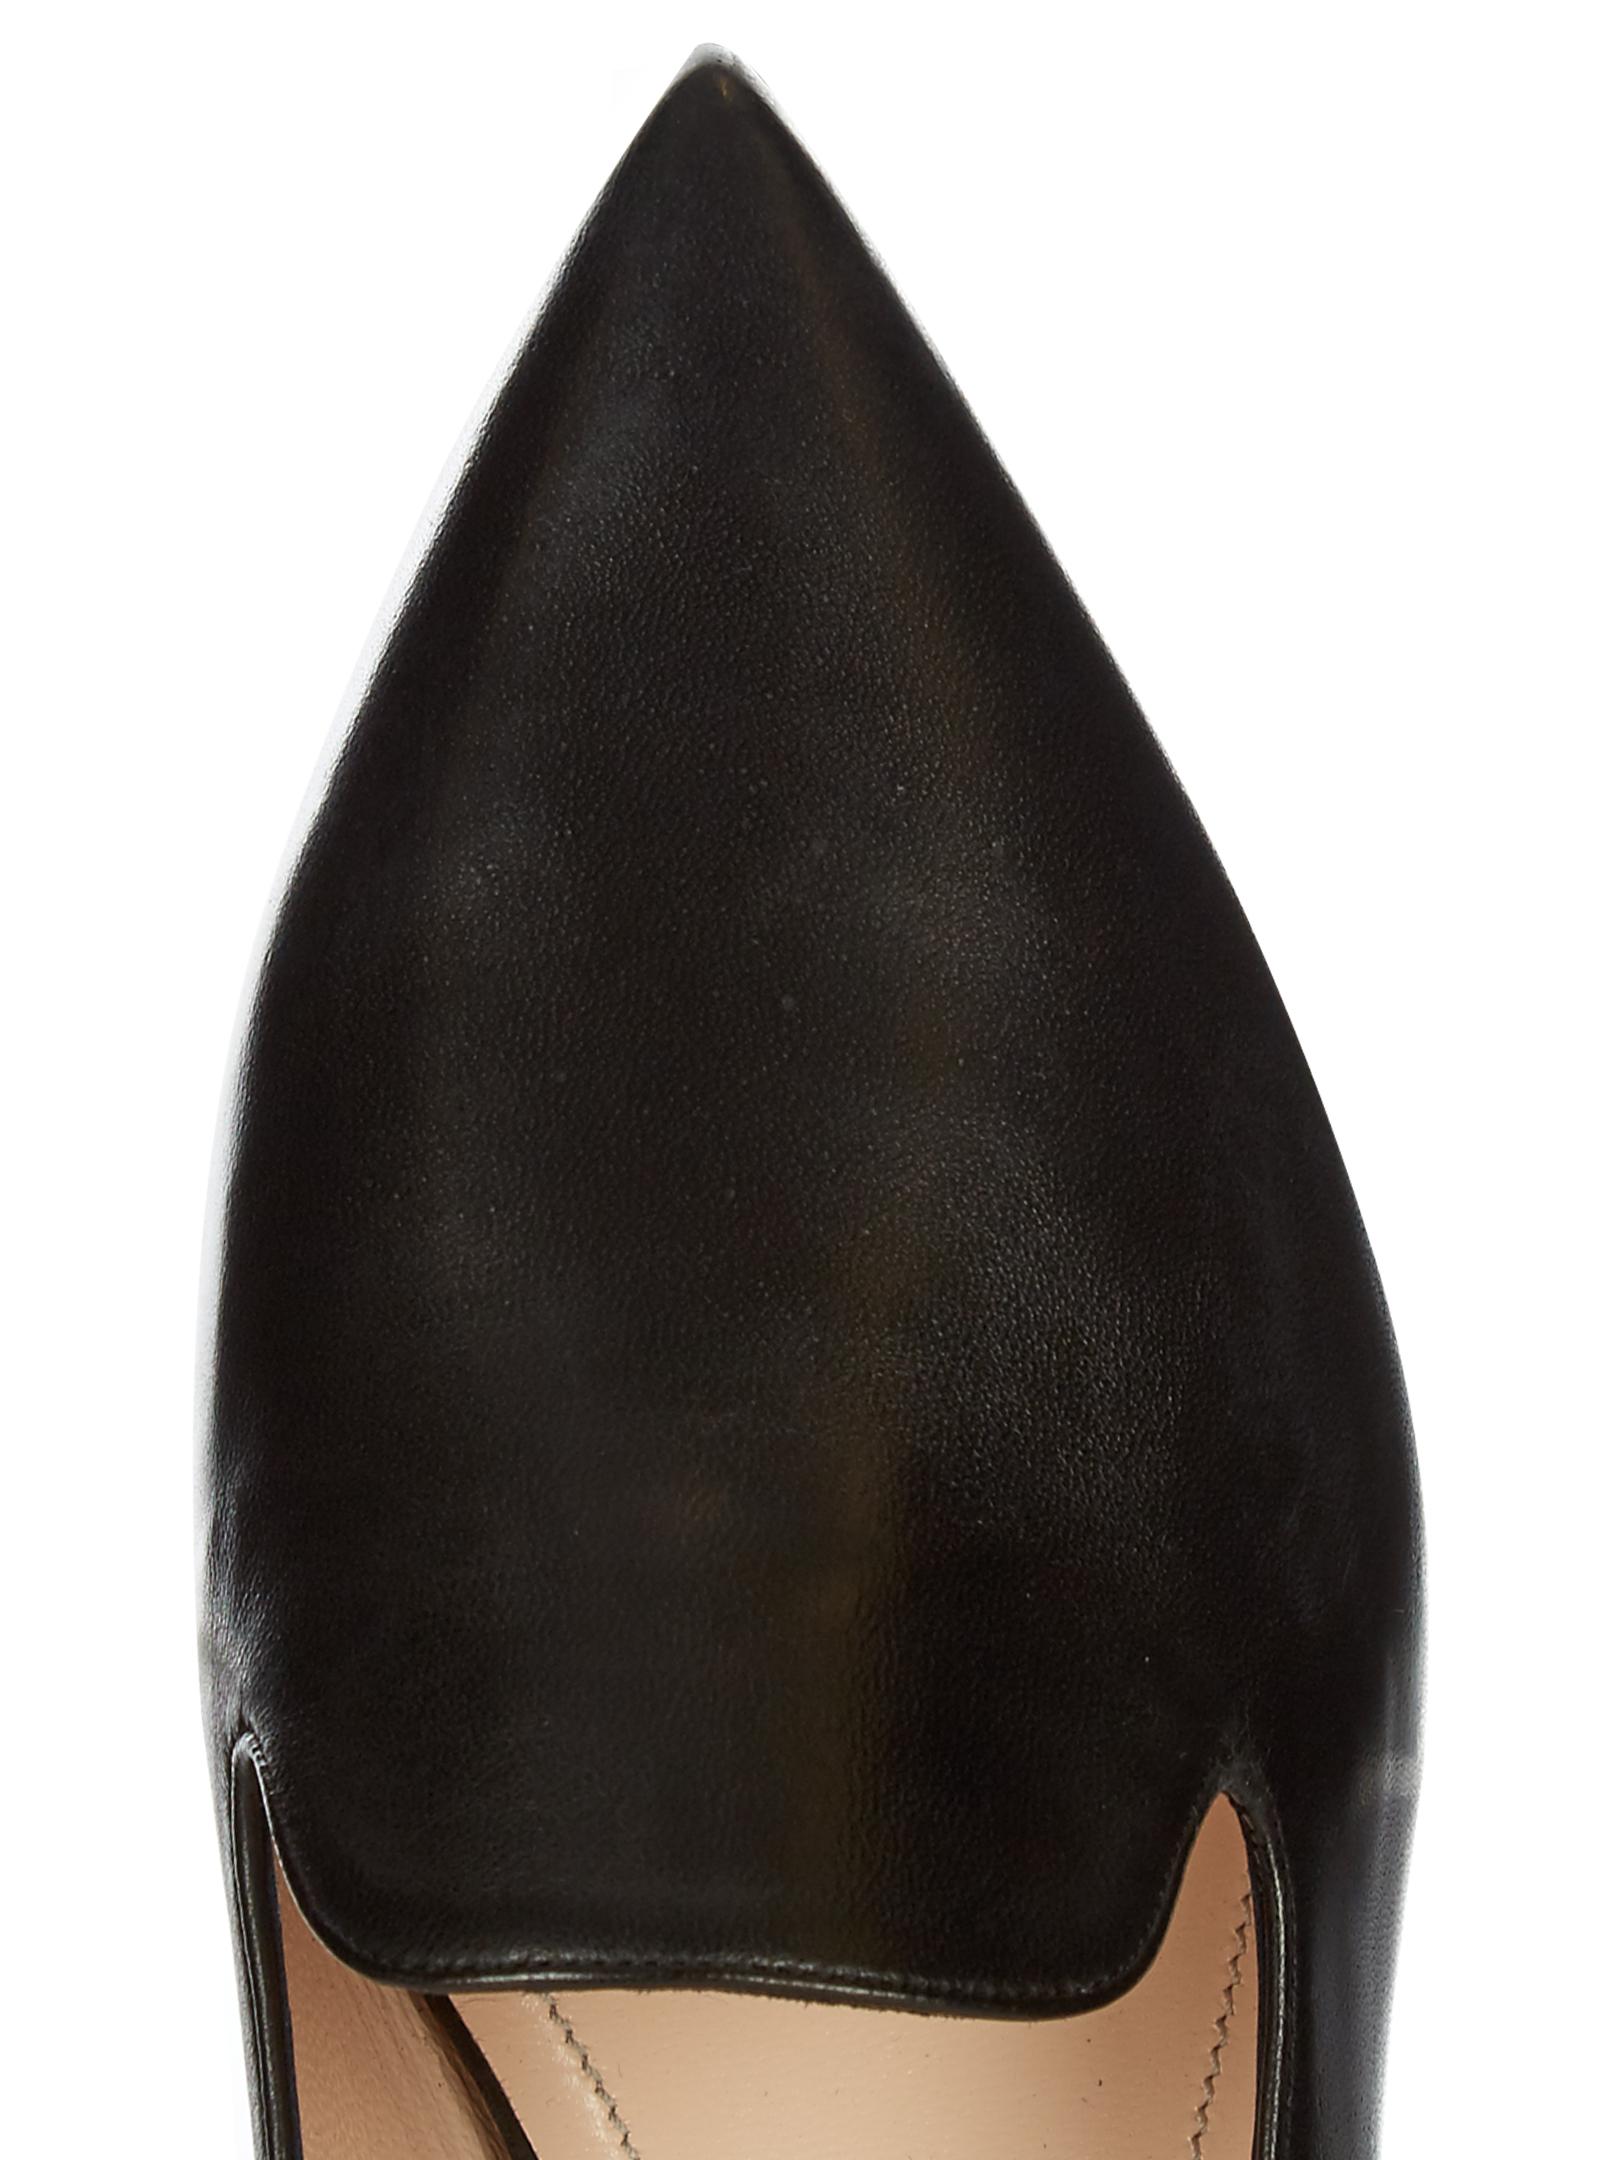 Nicholas Kirkwood, Shoes, Nicholas Kirkwood Black Leather Casati Pearl  Mules Flats Slides 395 8 85